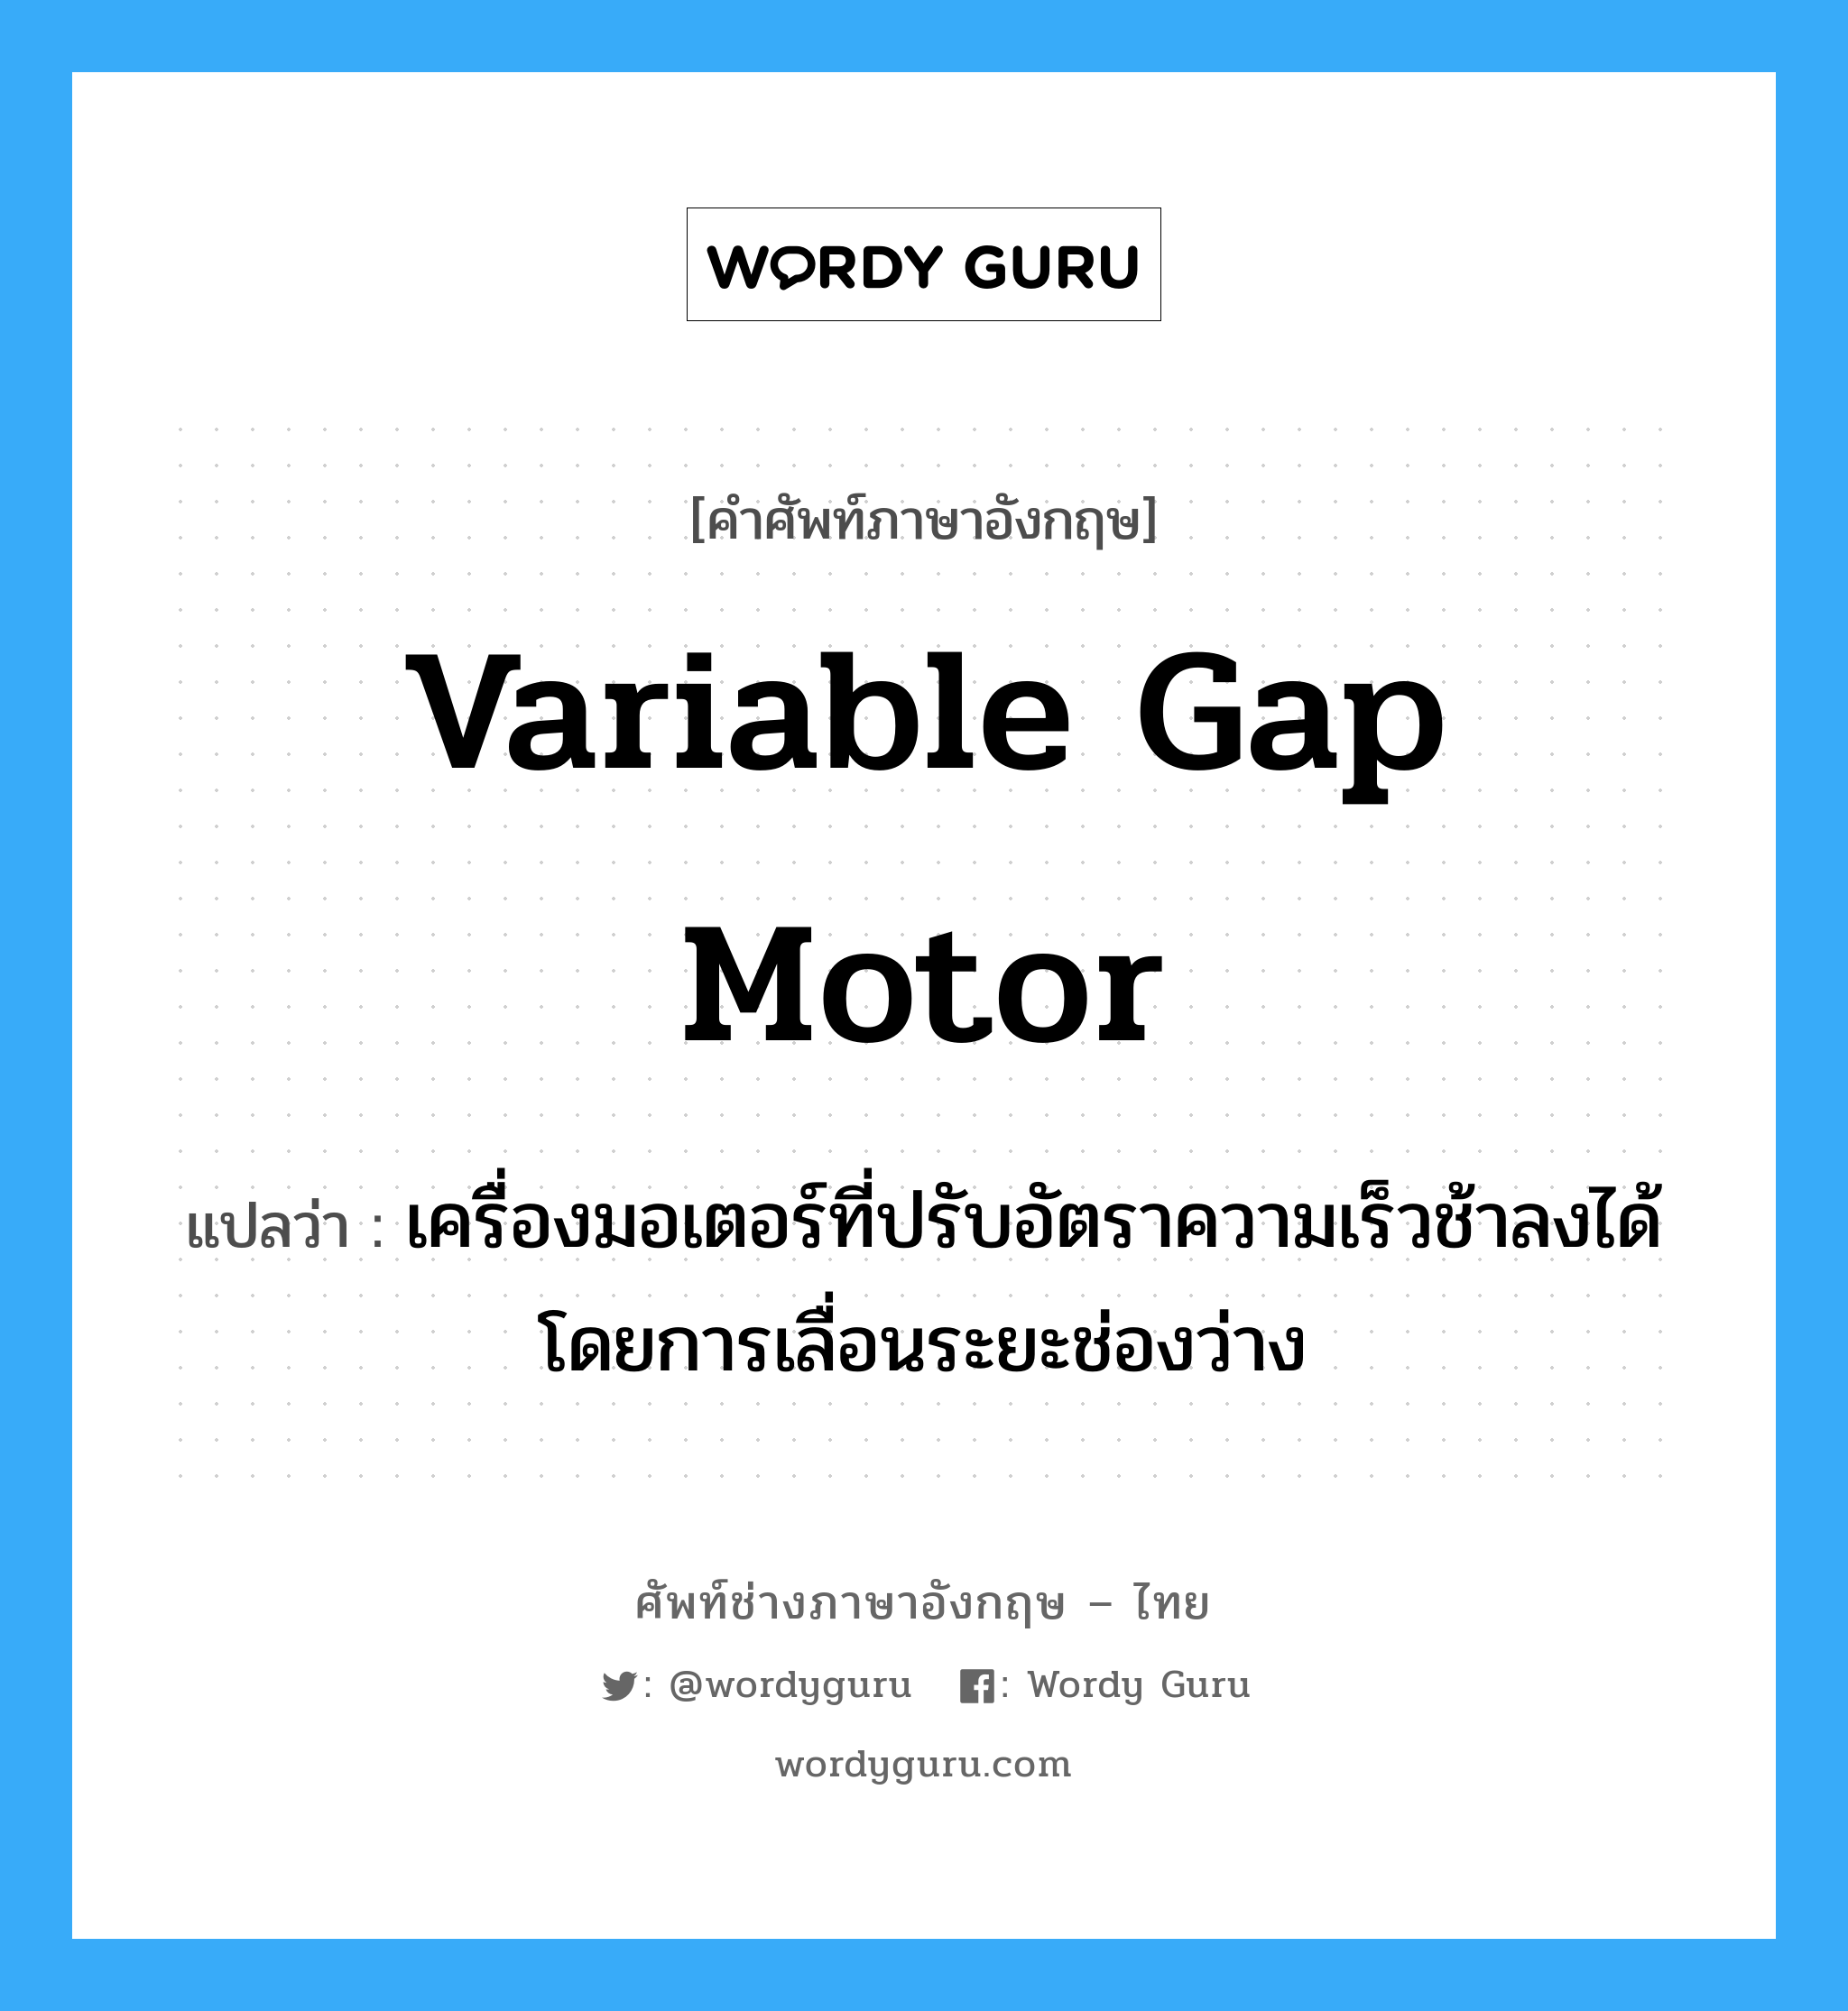 variable gap motor แปลว่า?, คำศัพท์ช่างภาษาอังกฤษ - ไทย variable gap motor คำศัพท์ภาษาอังกฤษ variable gap motor แปลว่า เครื่องมอเตอร์ที่ปรับอัตราความเร็วช้าลงได้โดยการเลื่อนระยะช่องว่าง